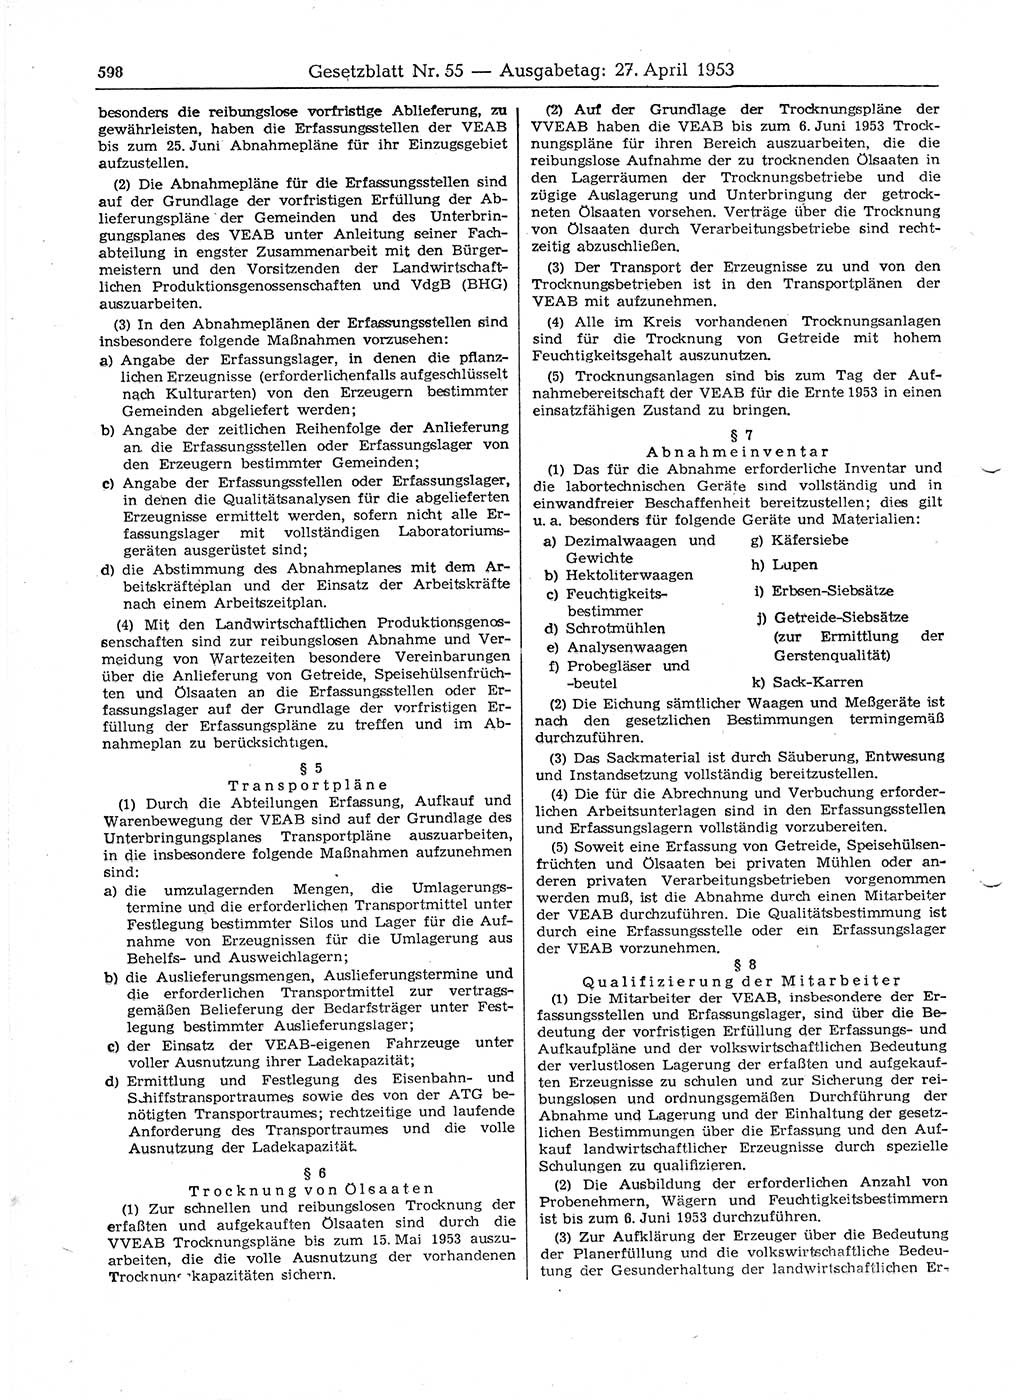 Gesetzblatt (GBl.) der Deutschen Demokratischen Republik (DDR) 1953, Seite 598 (GBl. DDR 1953, S. 598)